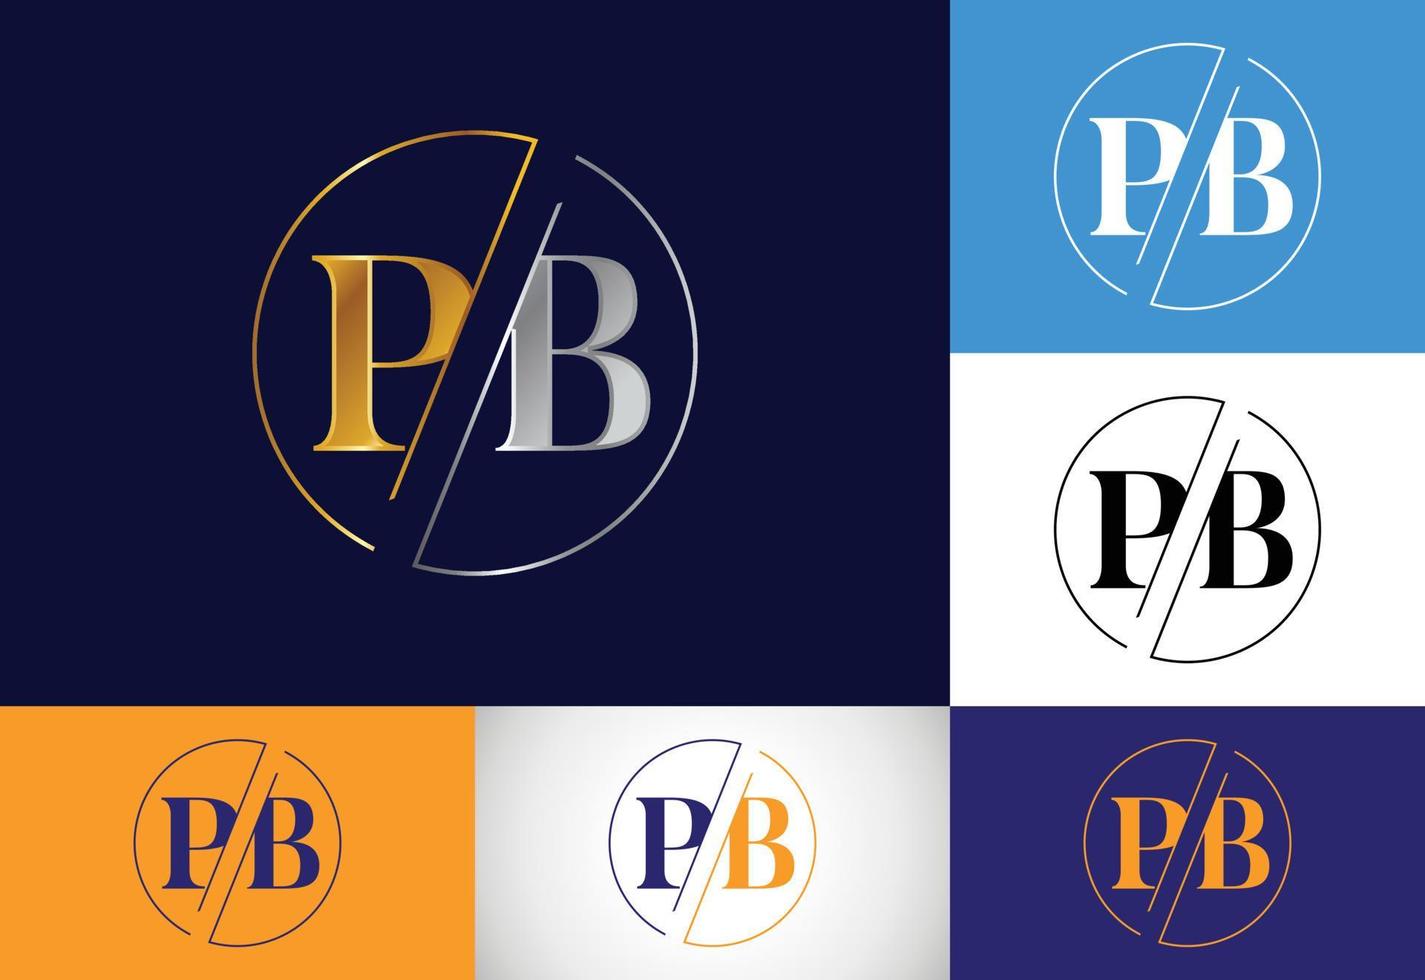 vetor de design de logotipo pb letra inicial. símbolo gráfico do alfabeto para identidade de negócios corporativos